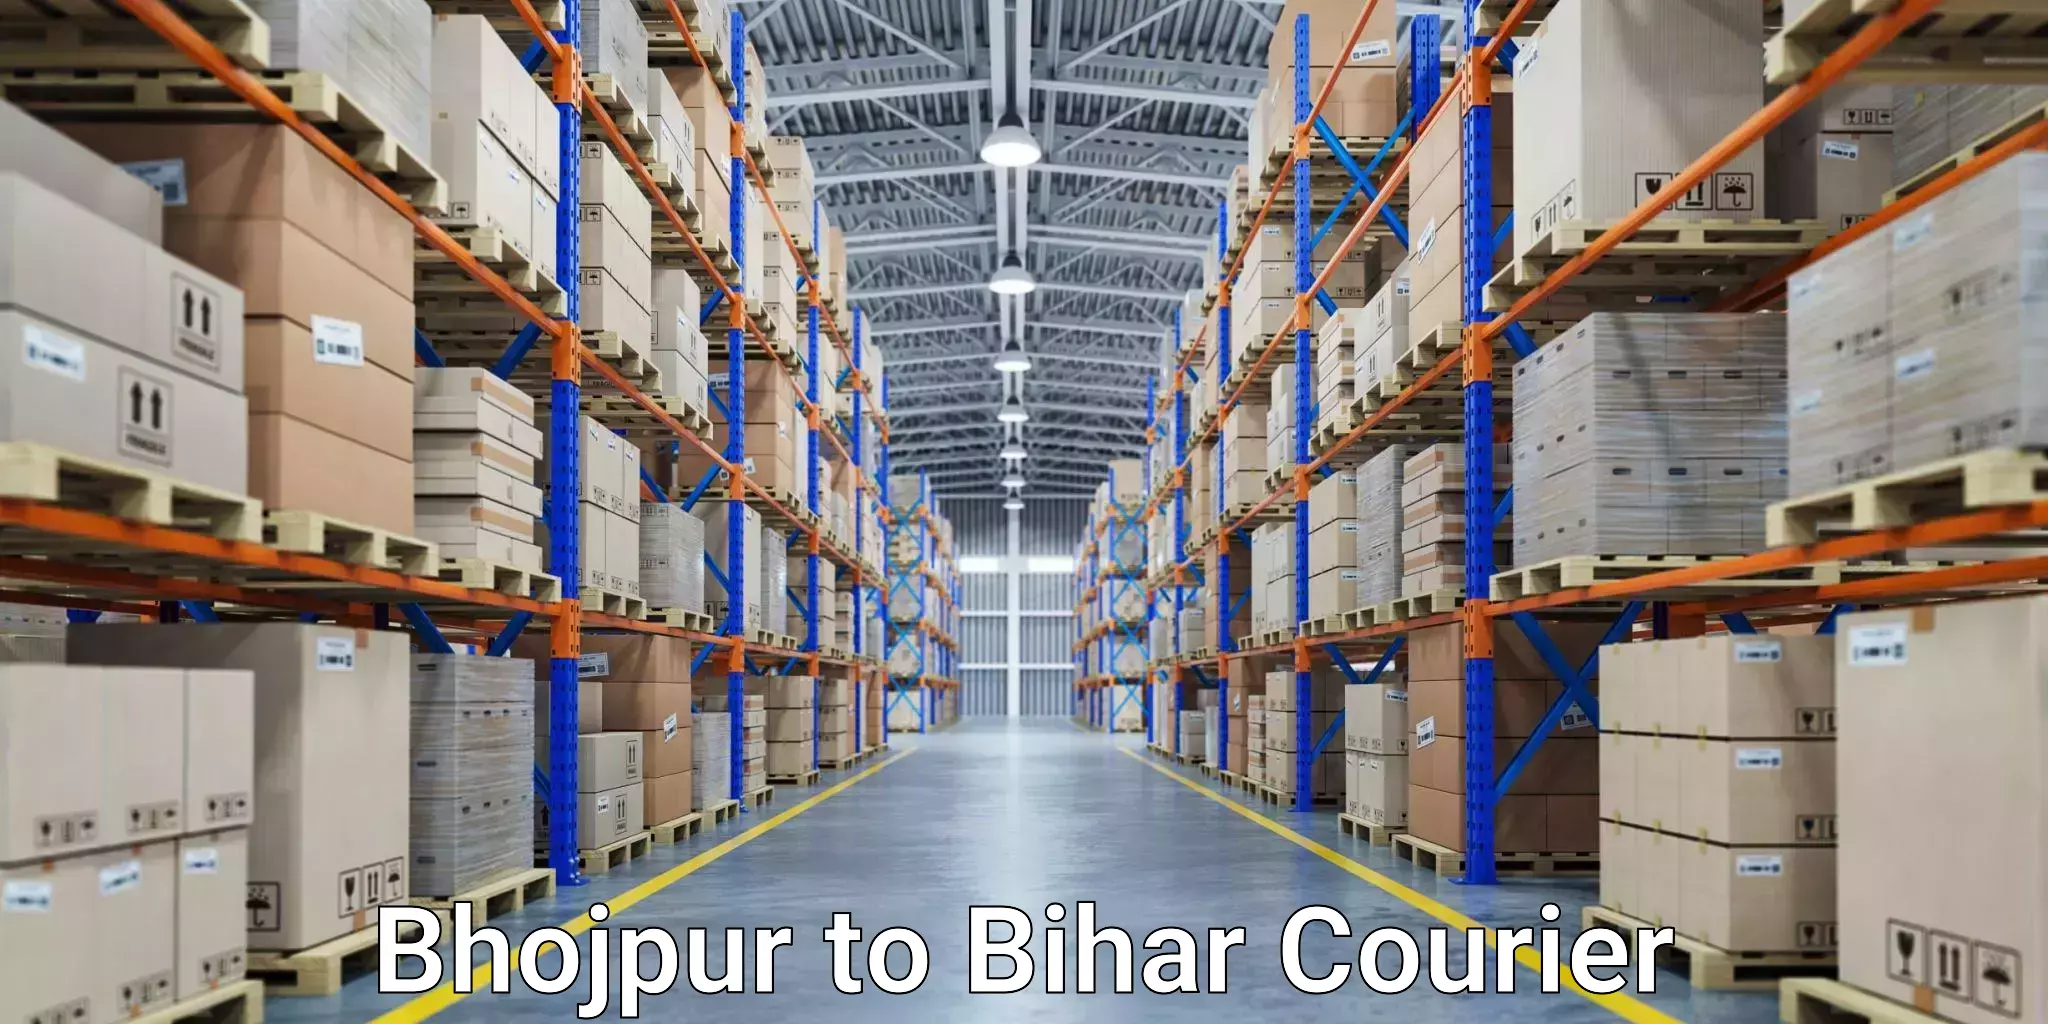 Express shipping Bhojpur to Katihar